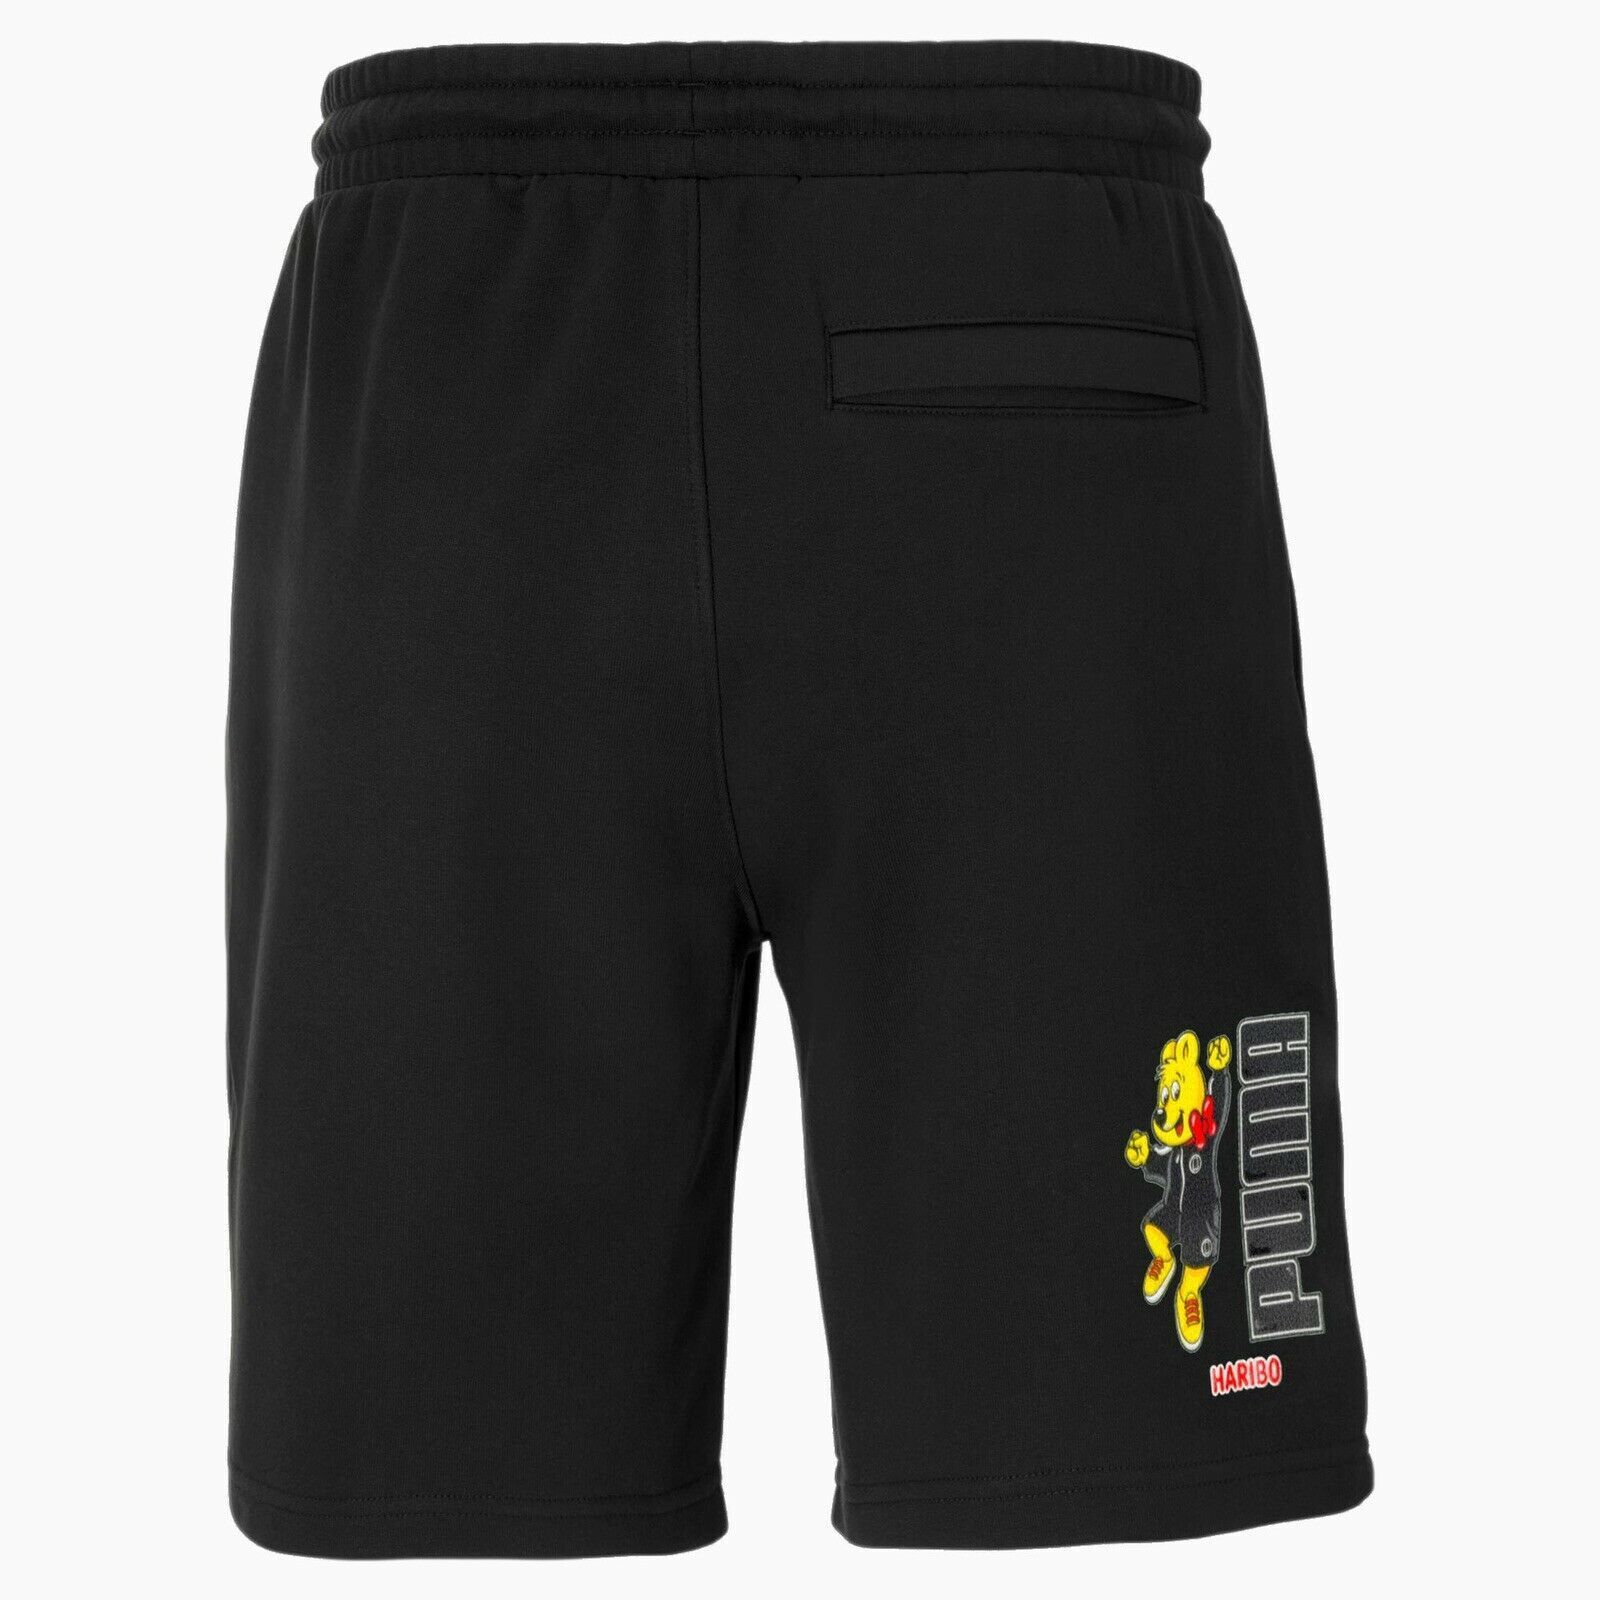 NWT Puma X Haribo Graphic Men\'s Cotton 8\'\' Inseam Shorts Black 532764-01 Size L